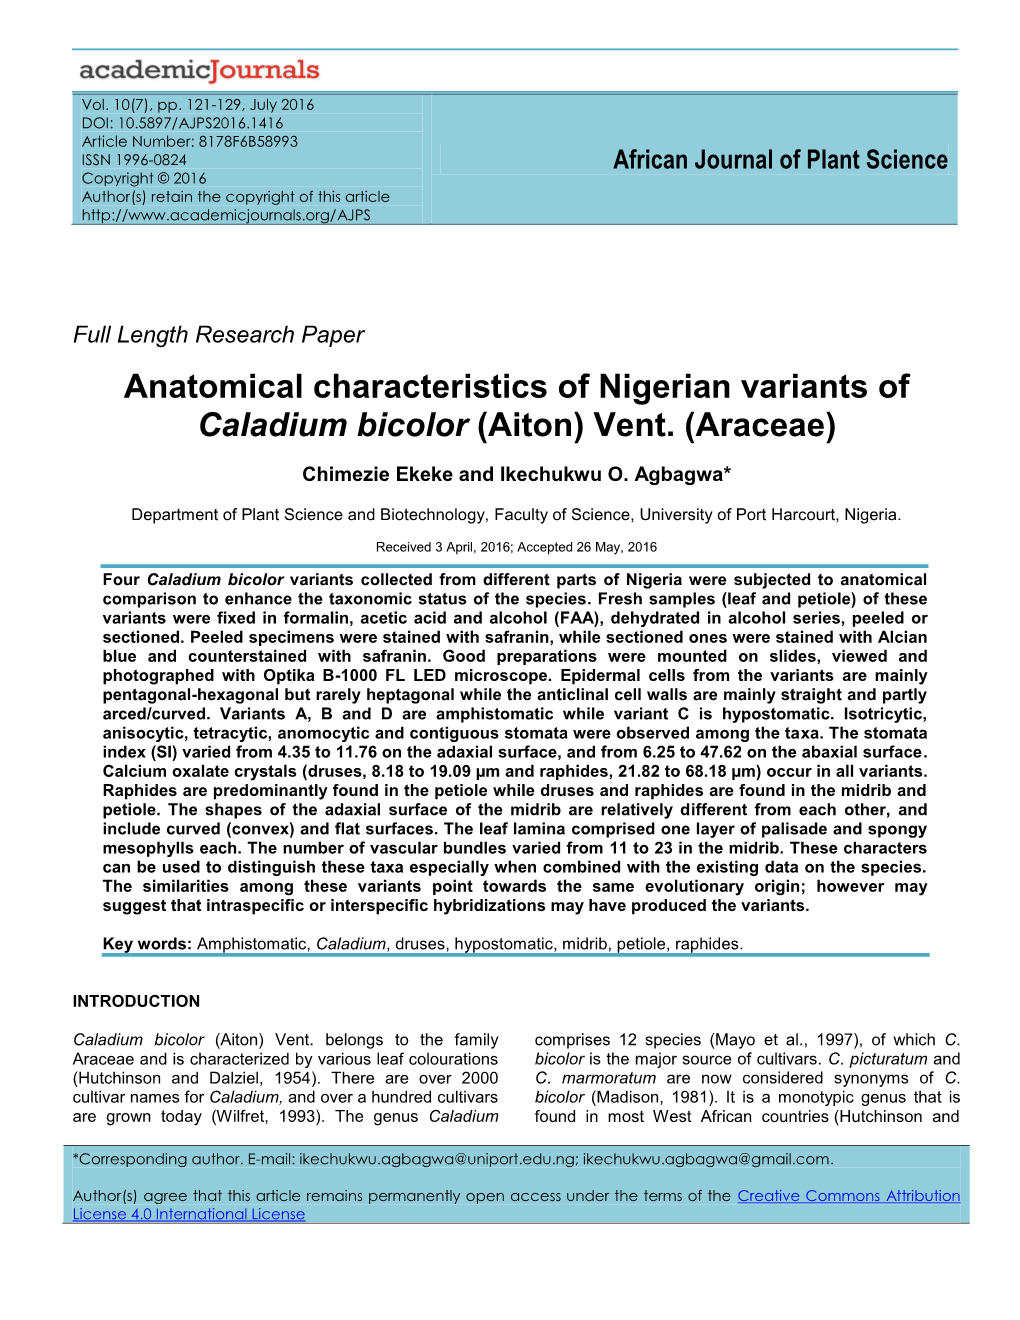 Anatomical Characteristics of Nigerian Variants of Caladium Bicolor (Aiton) Vent. (Araceae)